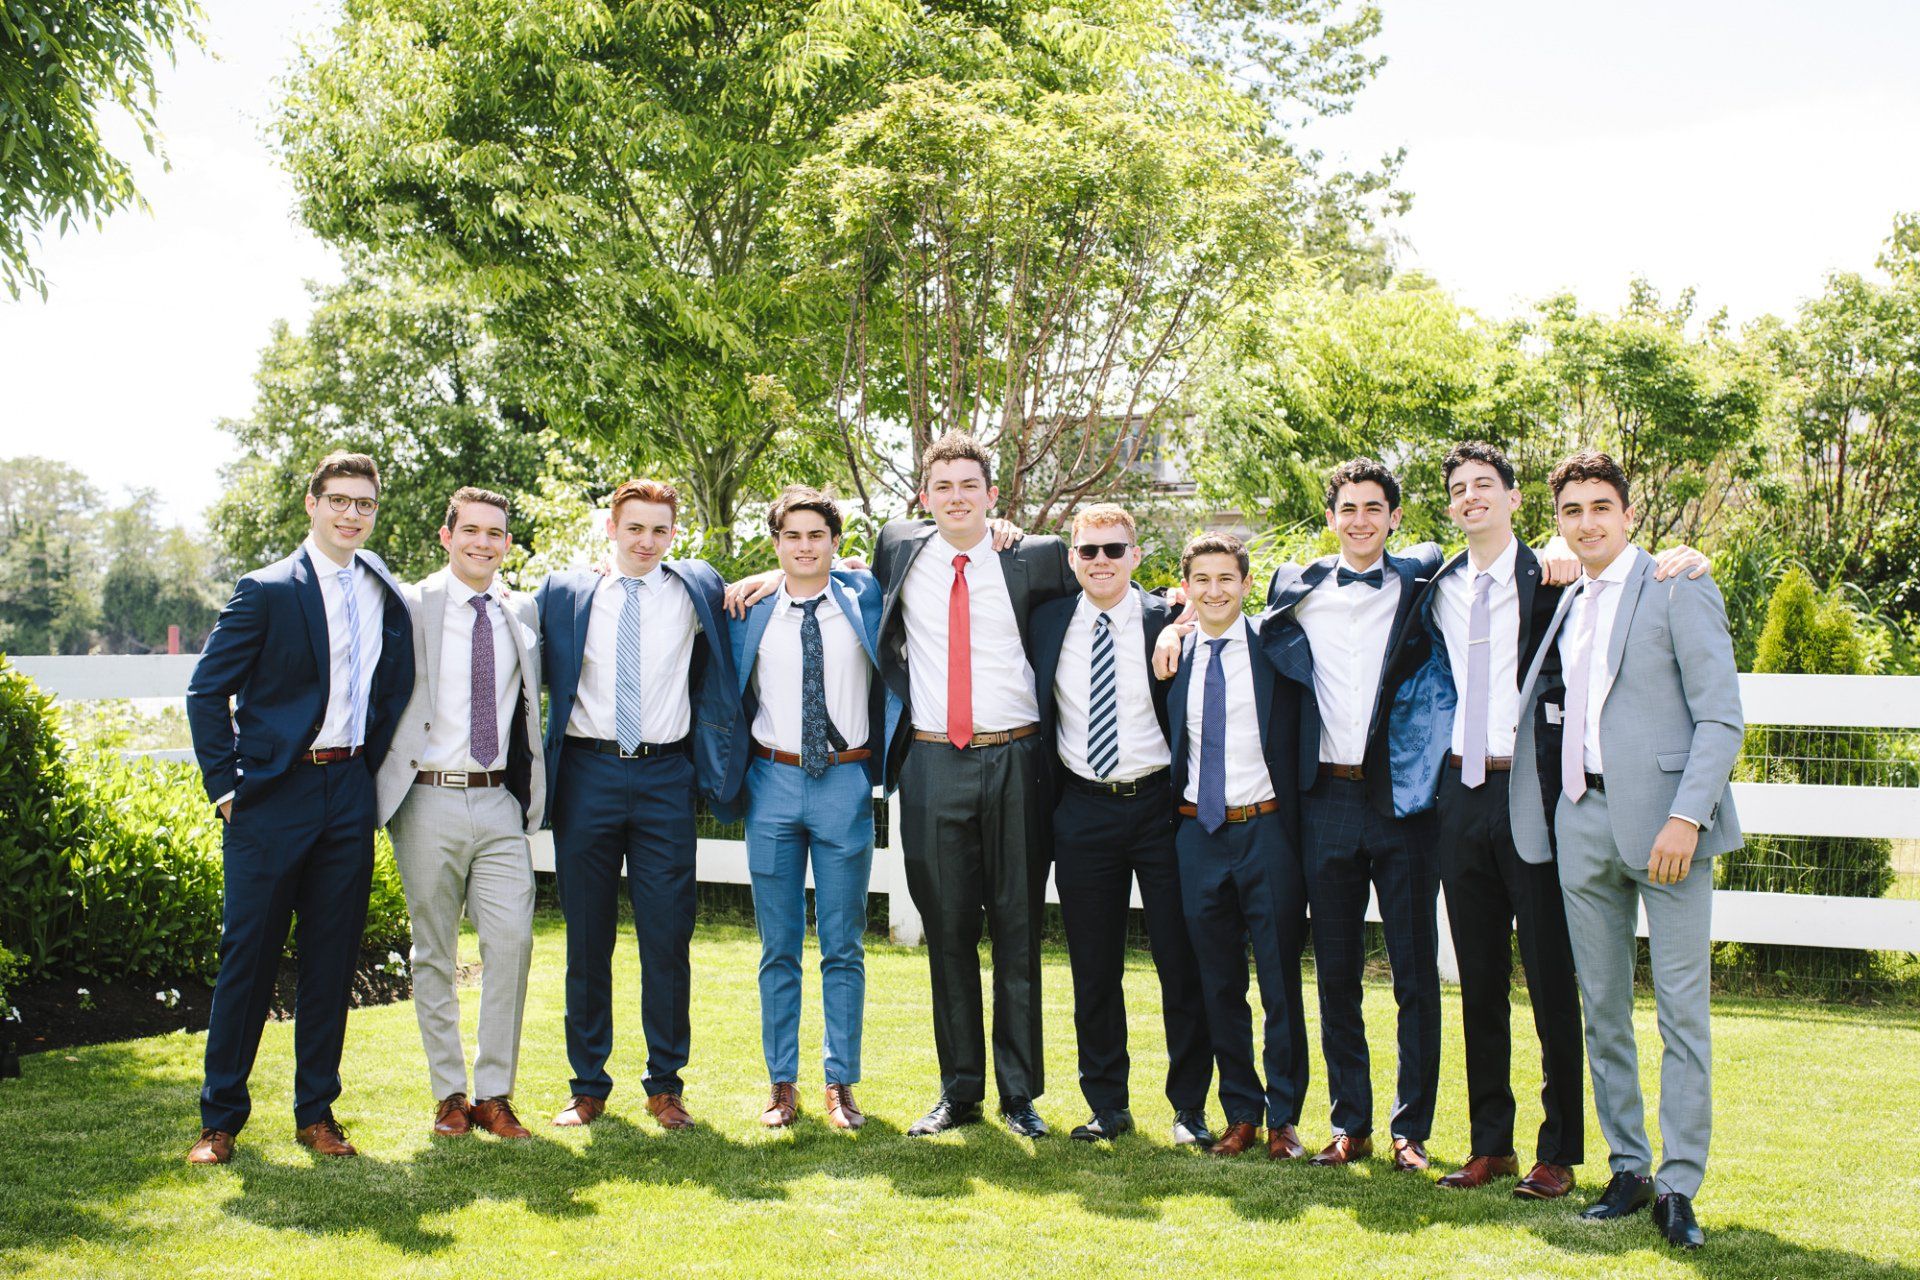 Group shot of young men at graduation